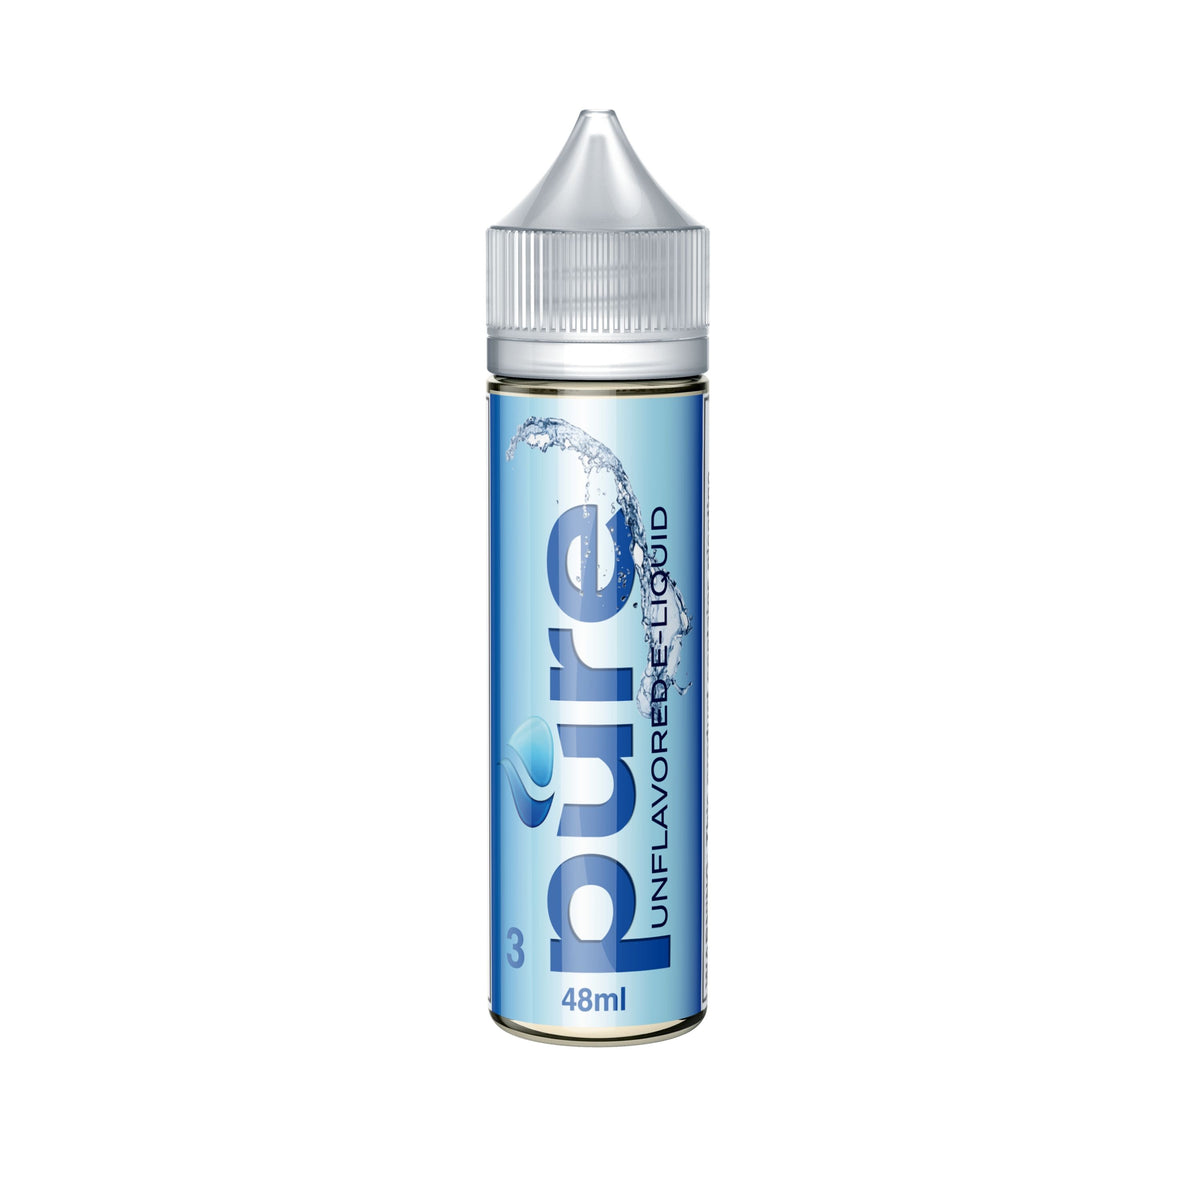 Pure Unflavored E-Juice 48ml